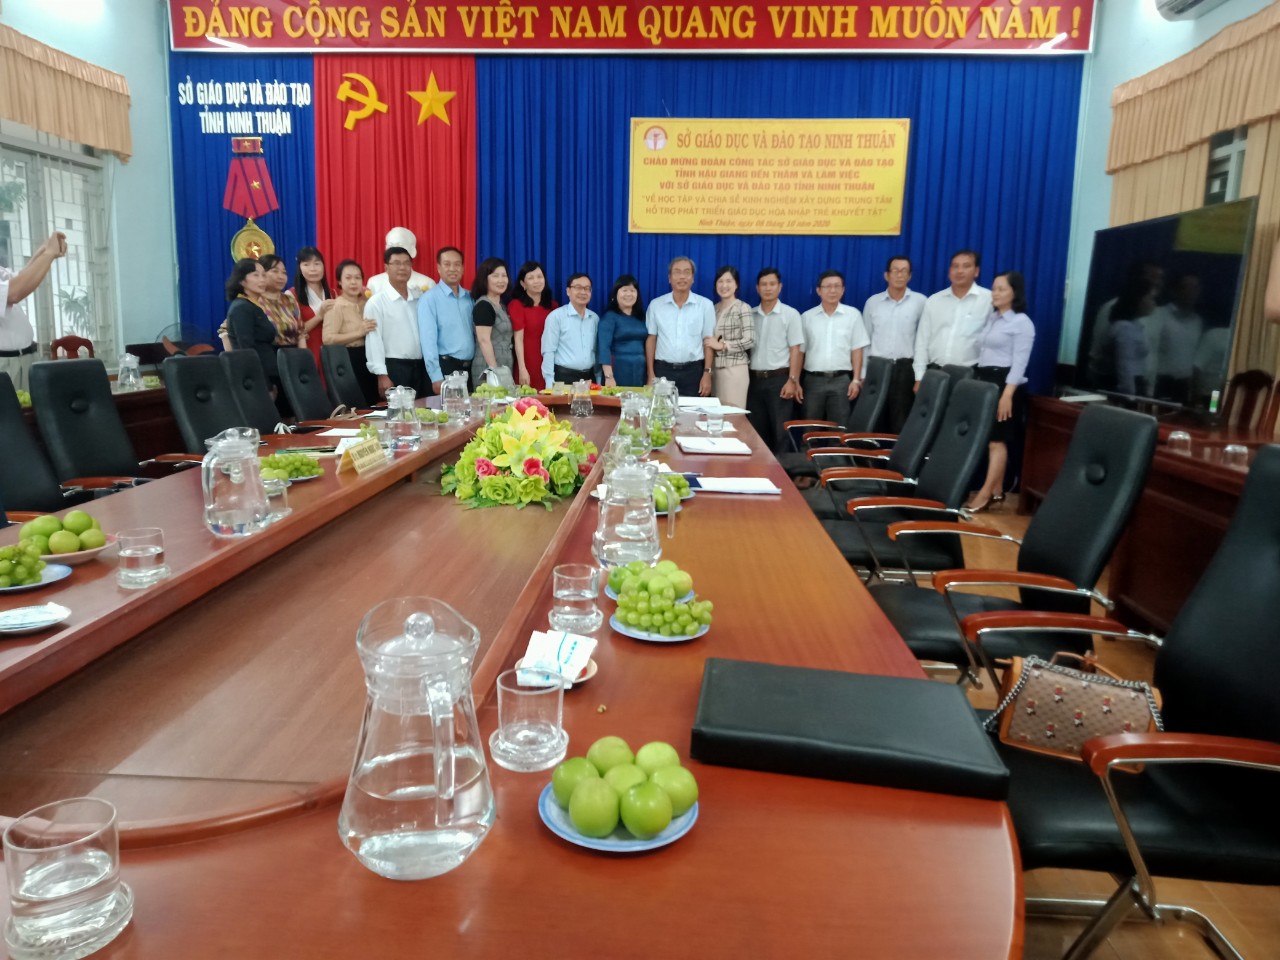 Đoàn công tác làm việc tại Sở Giáo dục - Đào tạo tỉnh Ninh Thuận.